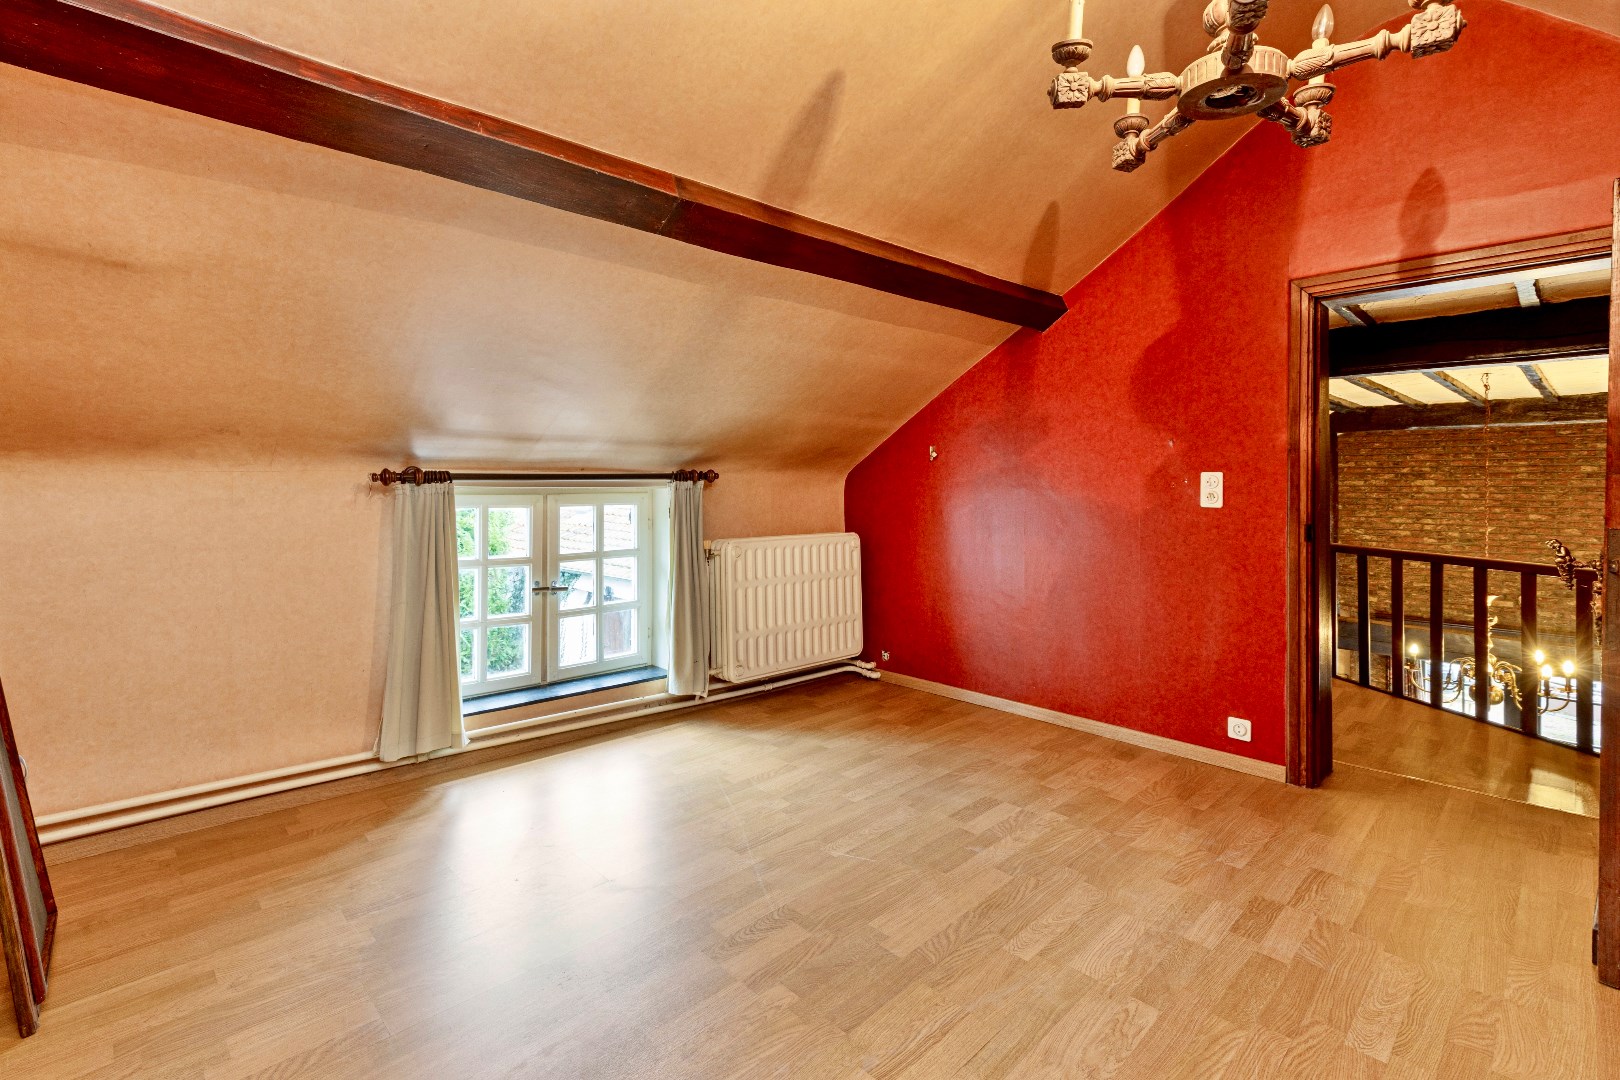 Maison a vendre | option - sous réserve À Galmaarden